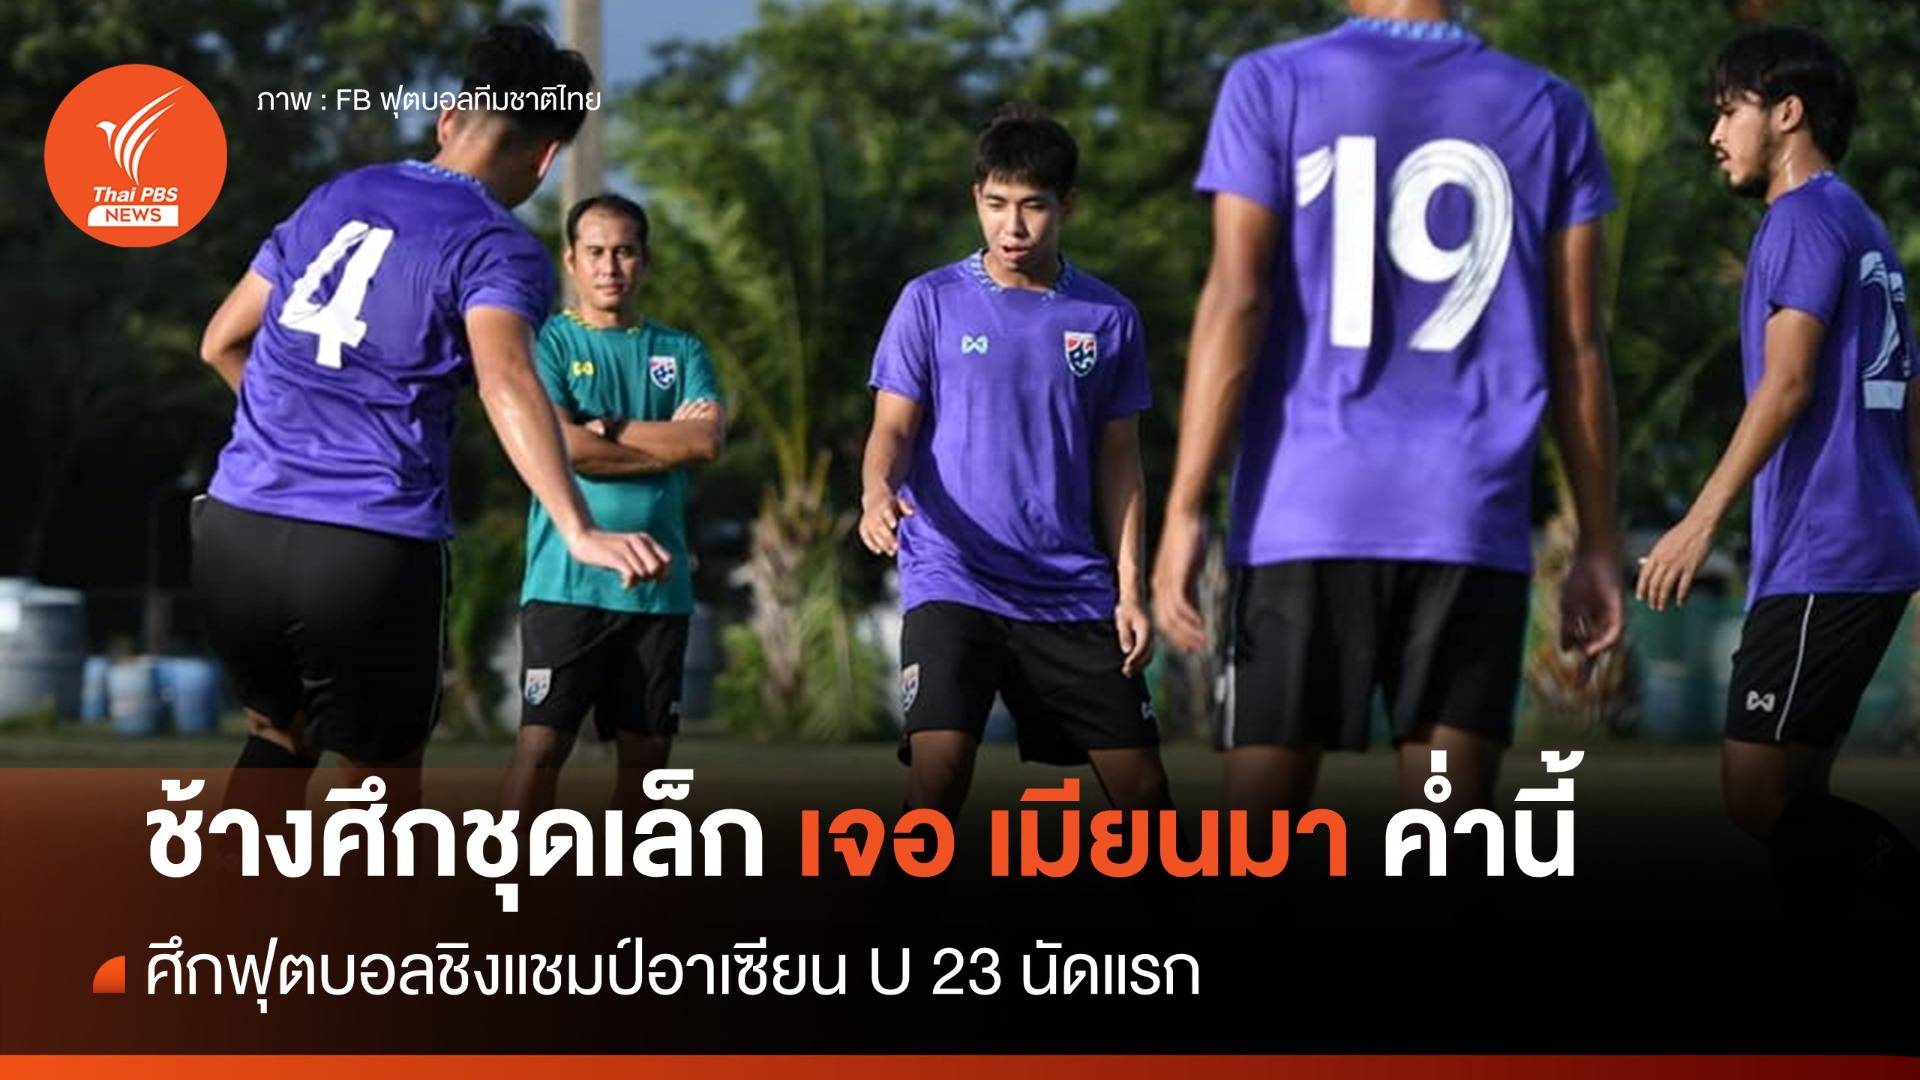 ทีมชาติไทย U23 เจอ เมียนมา นัดแรก ศึกชิงแชมป์อาเซียน ค่ำนี้